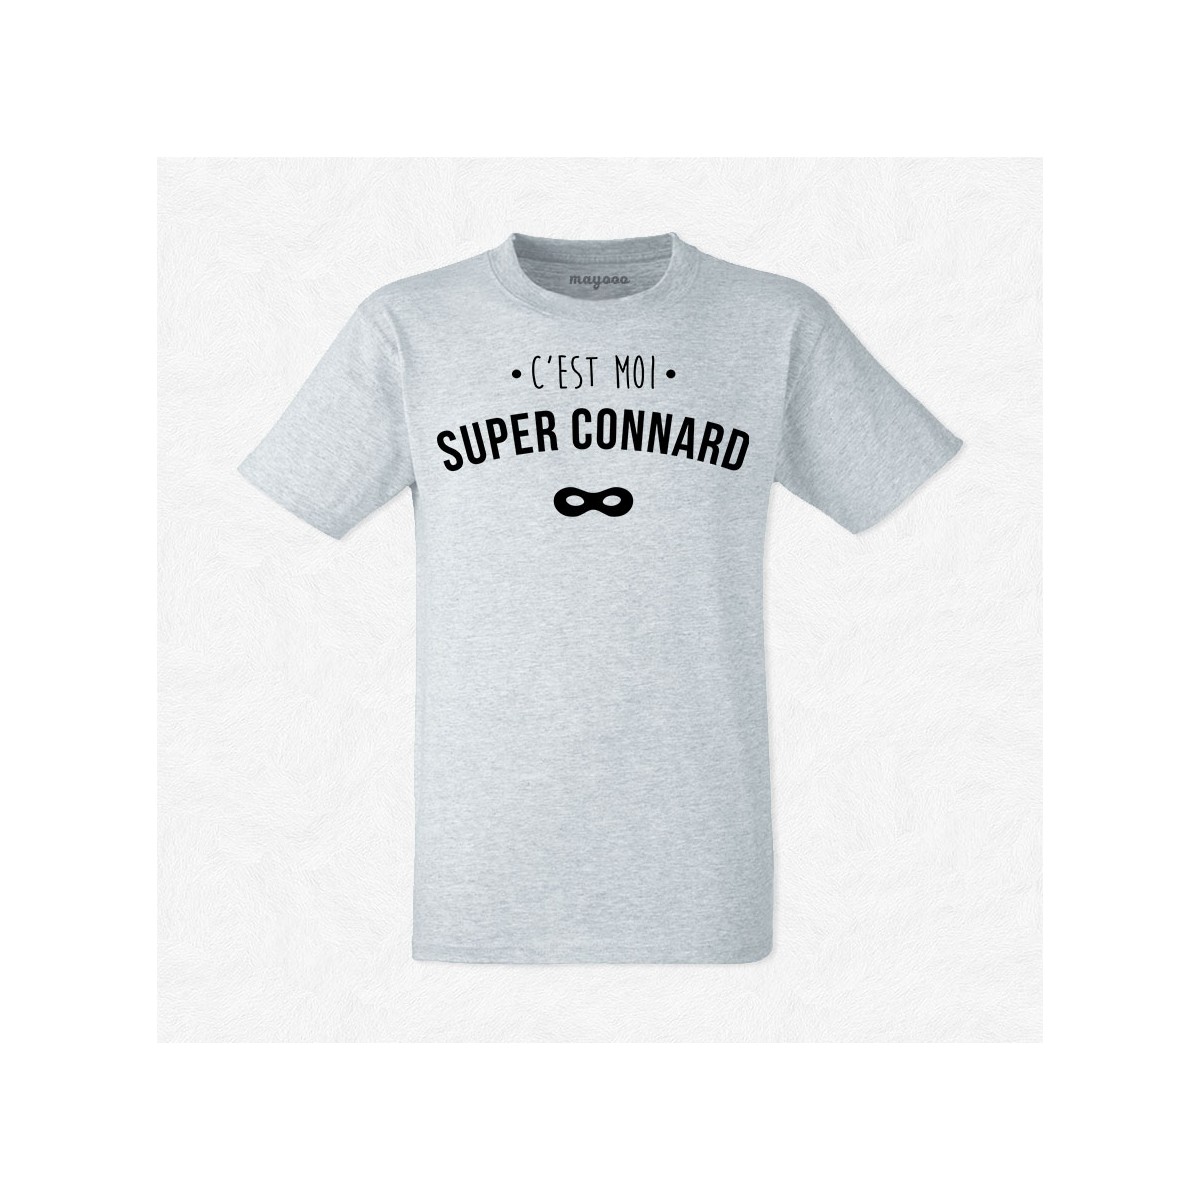 T-shirt Super connard